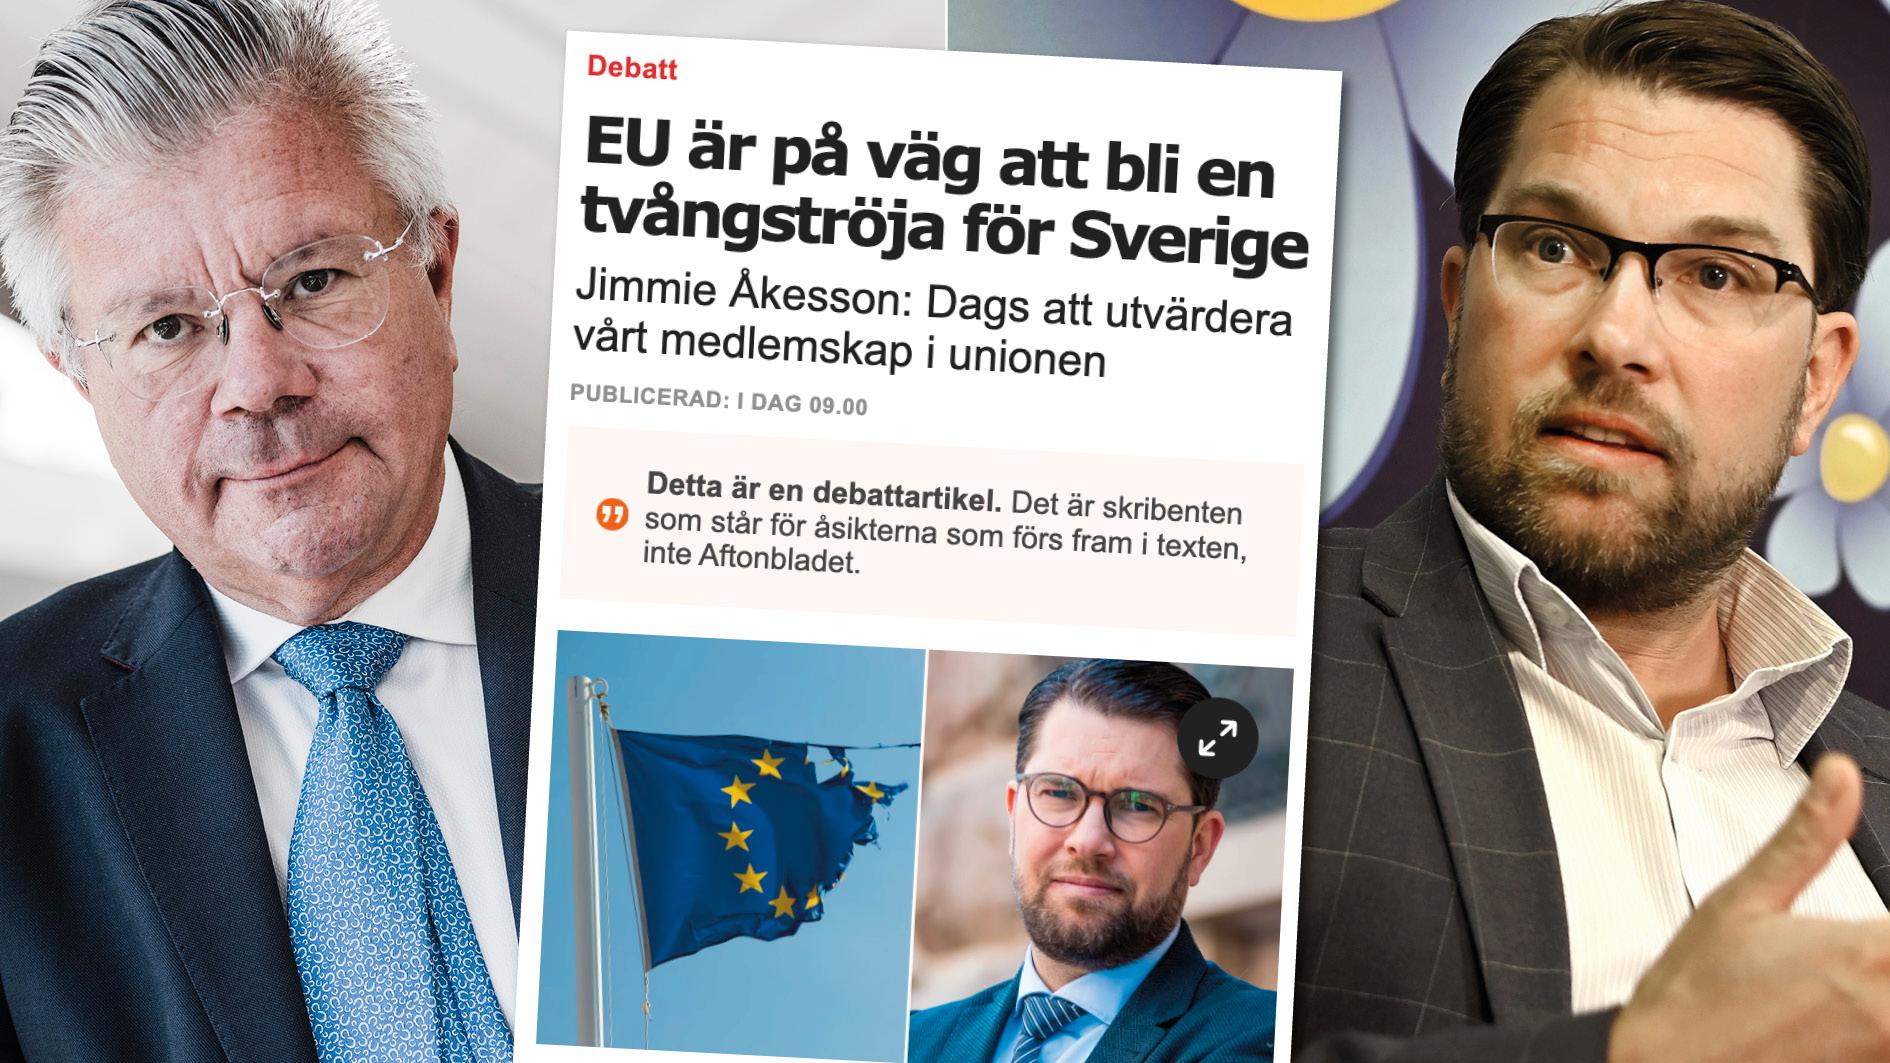 Att bara nämna de negativa sidorna av EU-samarbetet är inget annat än ett försök att konstruera en halmgubbe. Dessutom går Jimmie Åkessons inställning till unionen i otakt med folkviljan. Replik från EU-nämndens ordförande Hans Wallmark.